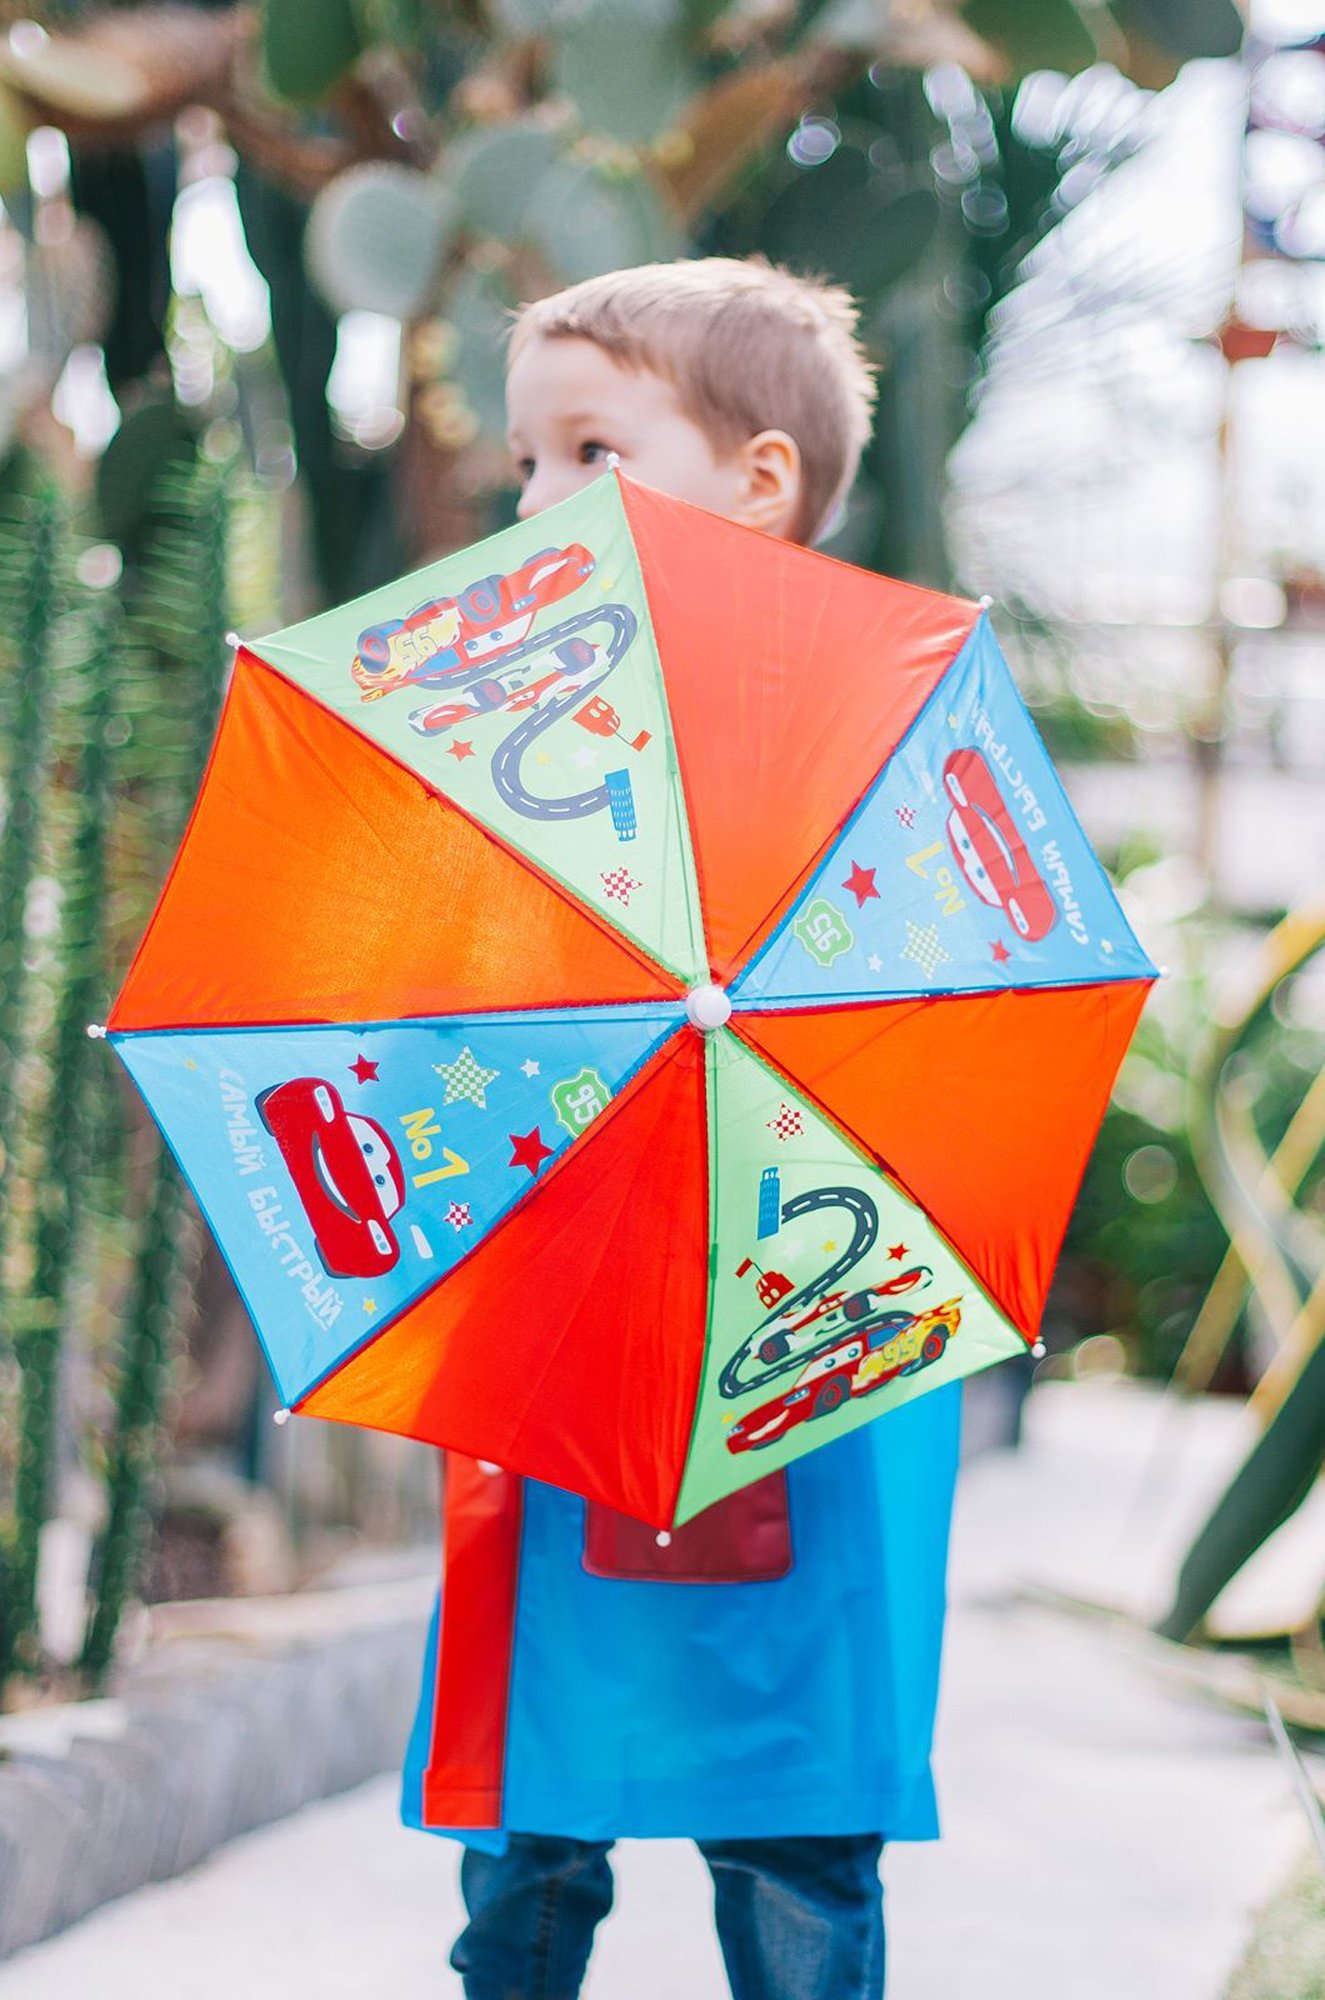 Зонт для мальчика Disney